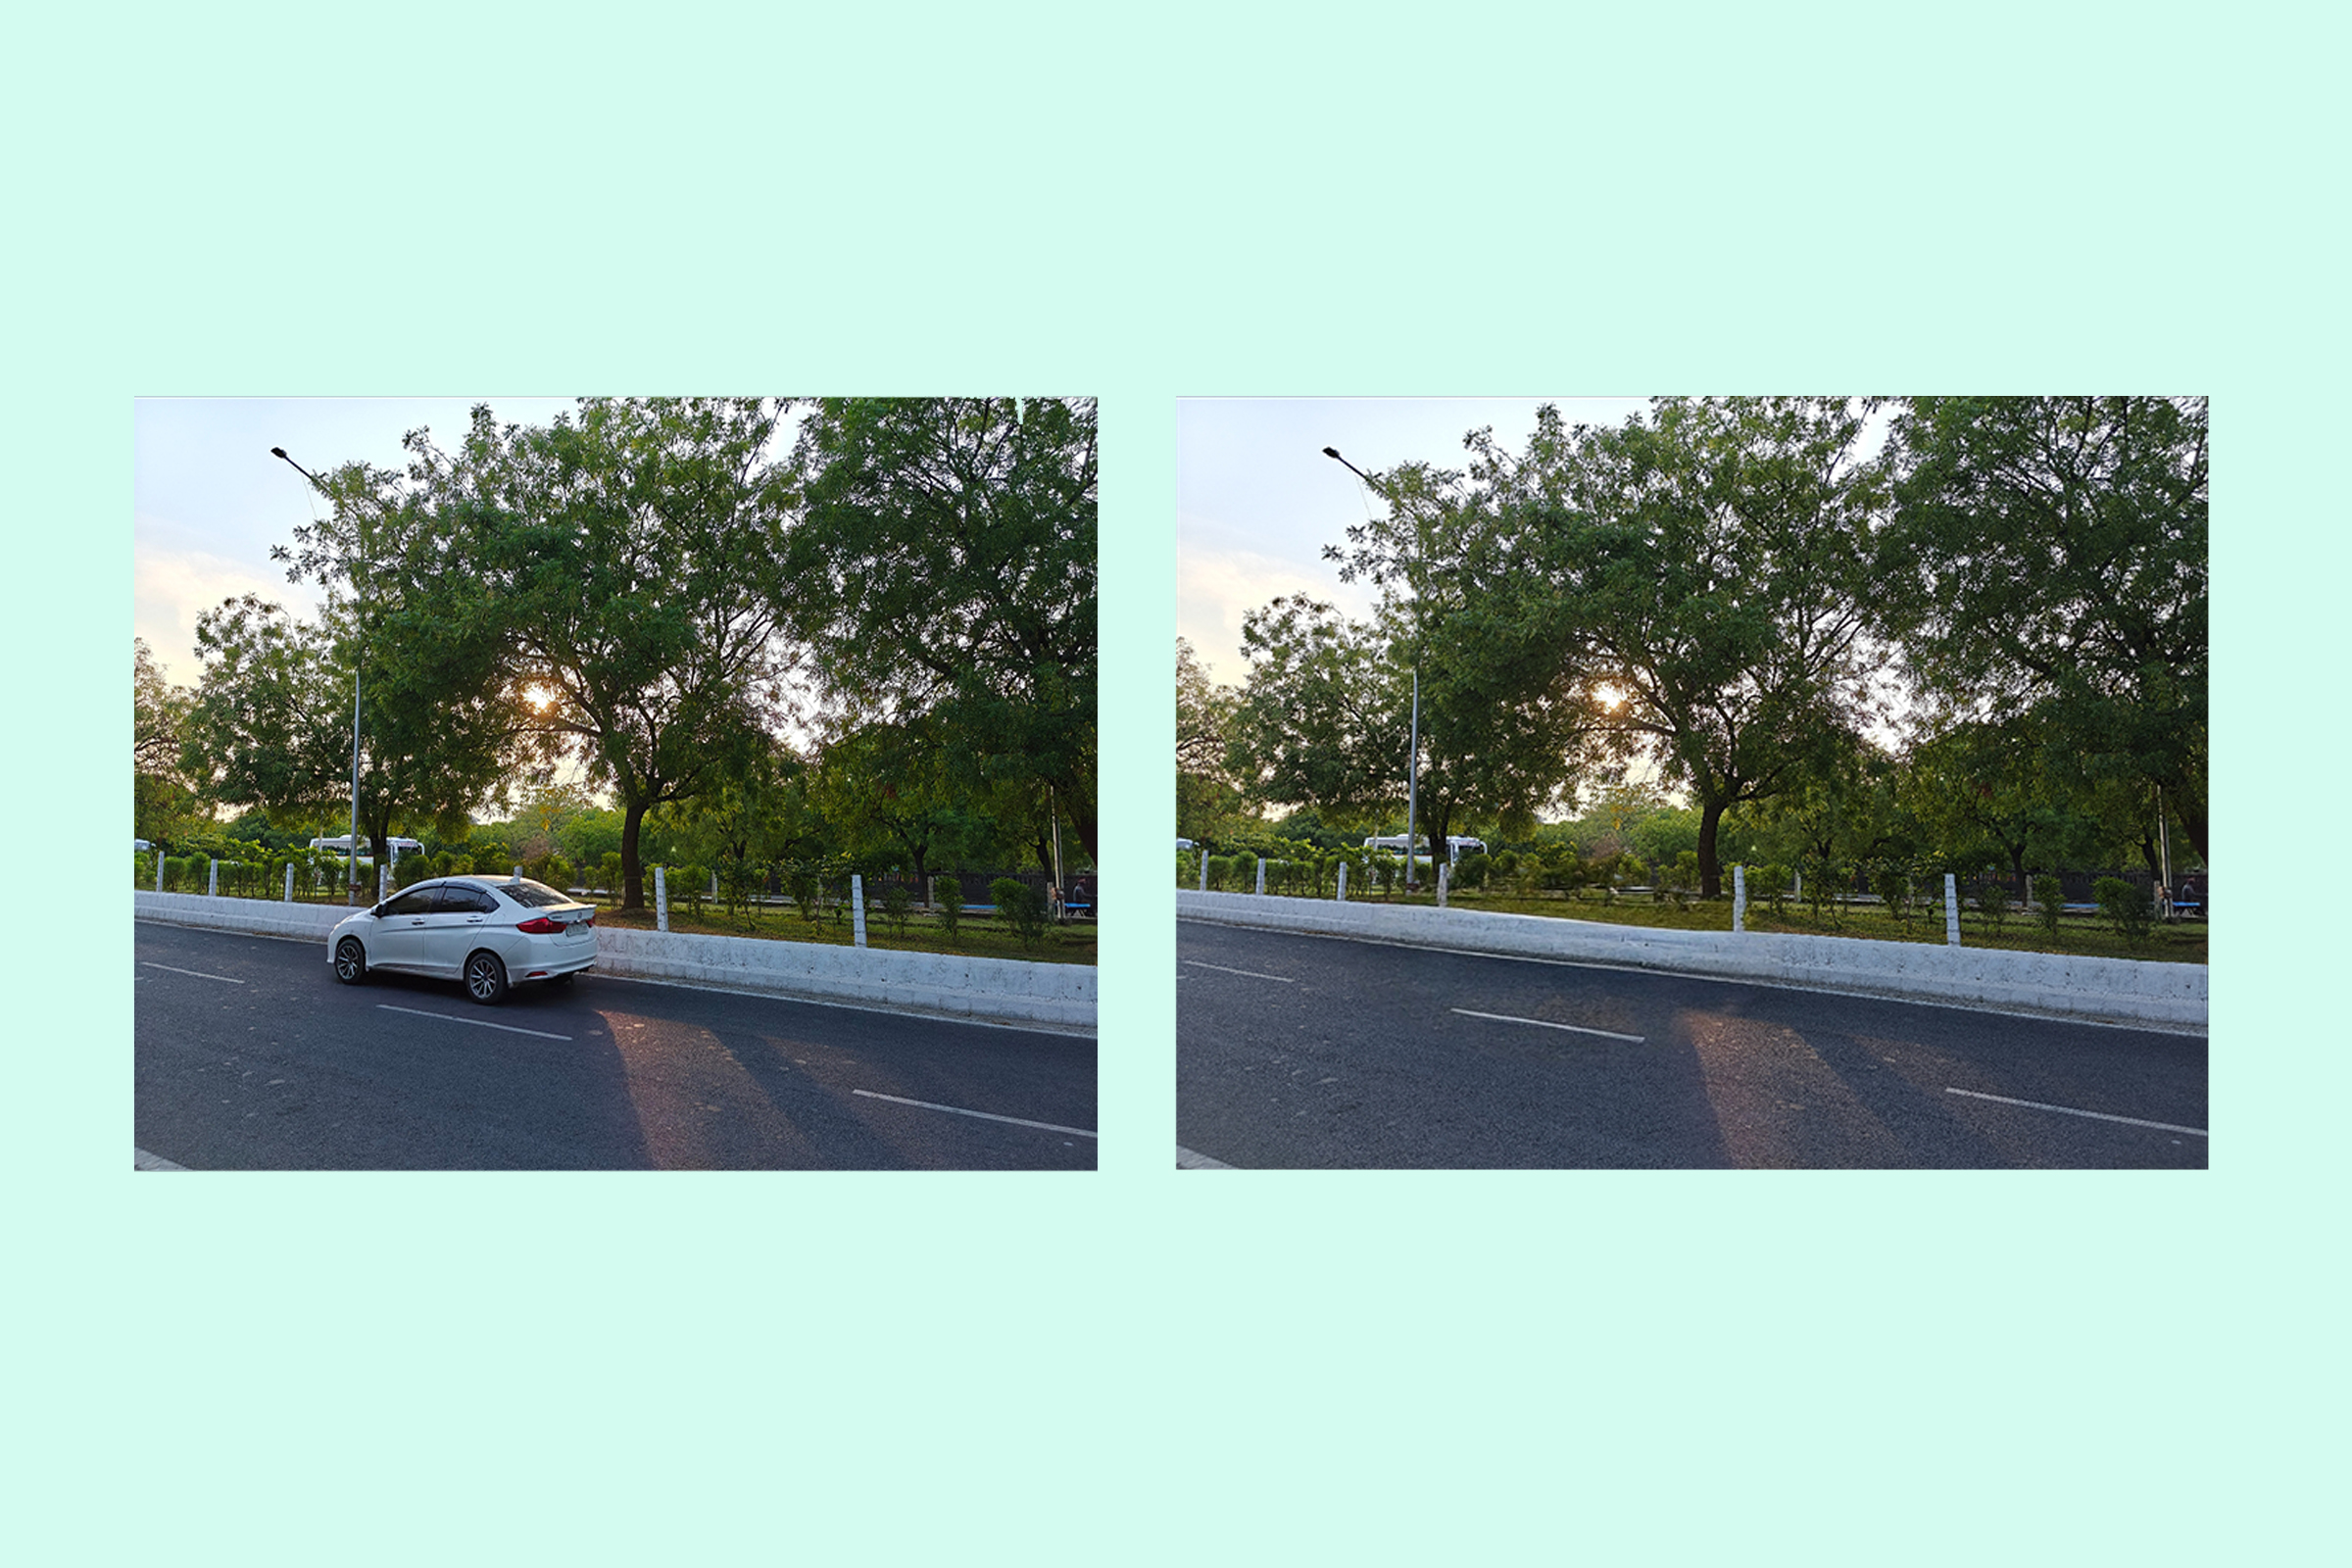 Realme के AI स्मार्ट रिमूवर का उपयोग किसी छवि से चलती कार को हटाने के लिए किया जाता है।